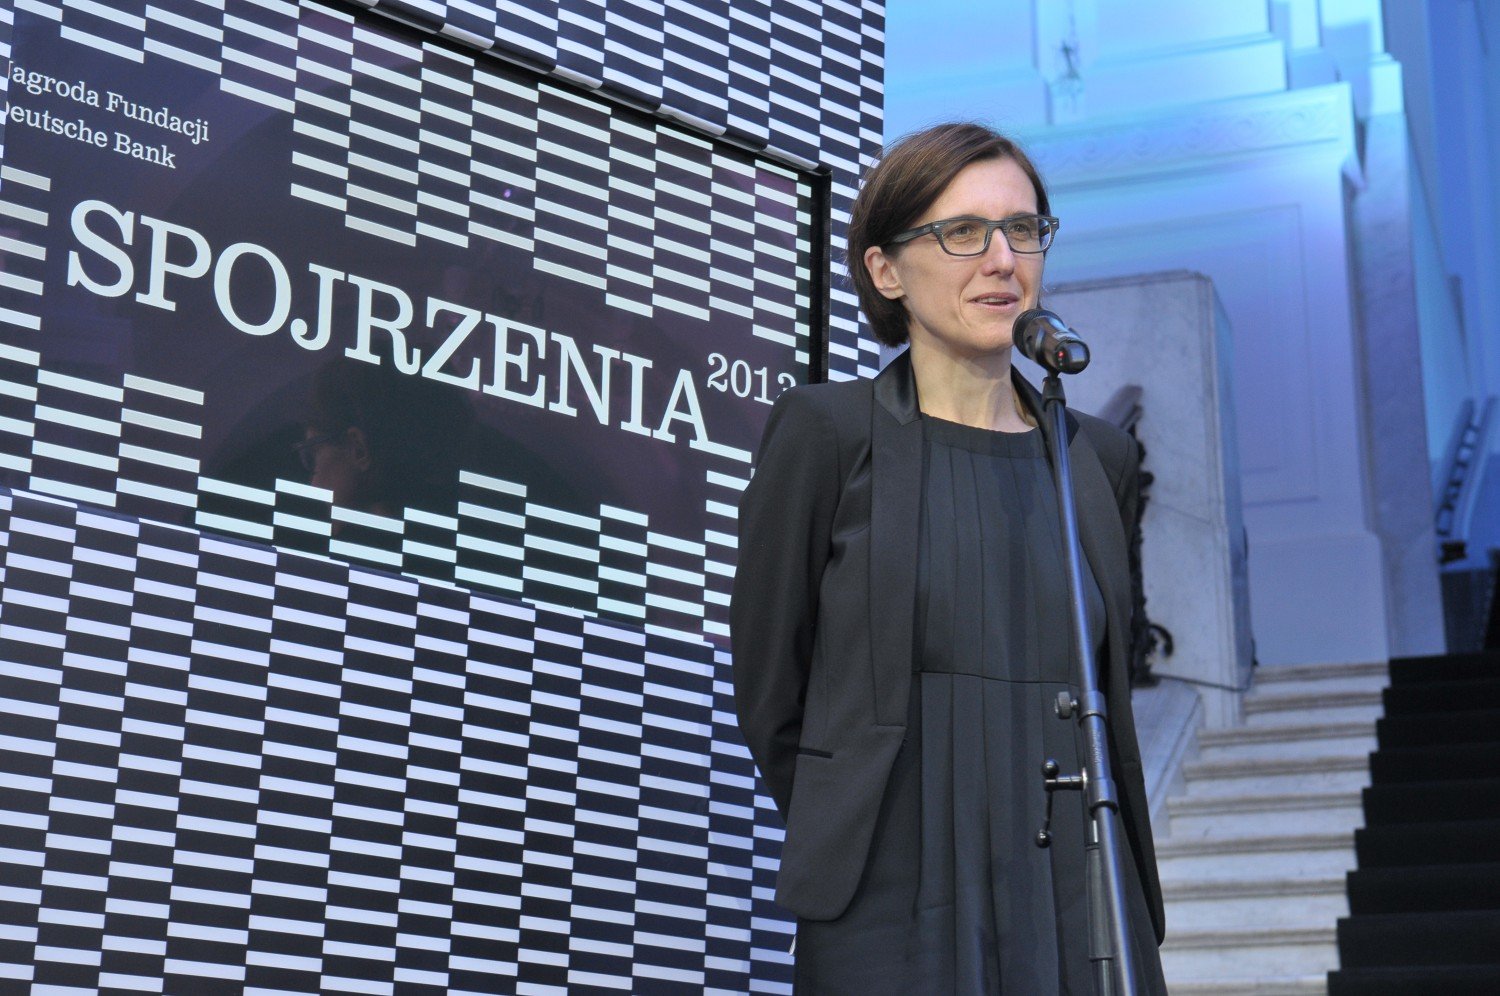 Przyznanie nagrody Spojrzenia, Hanna Wróblewska, 2013